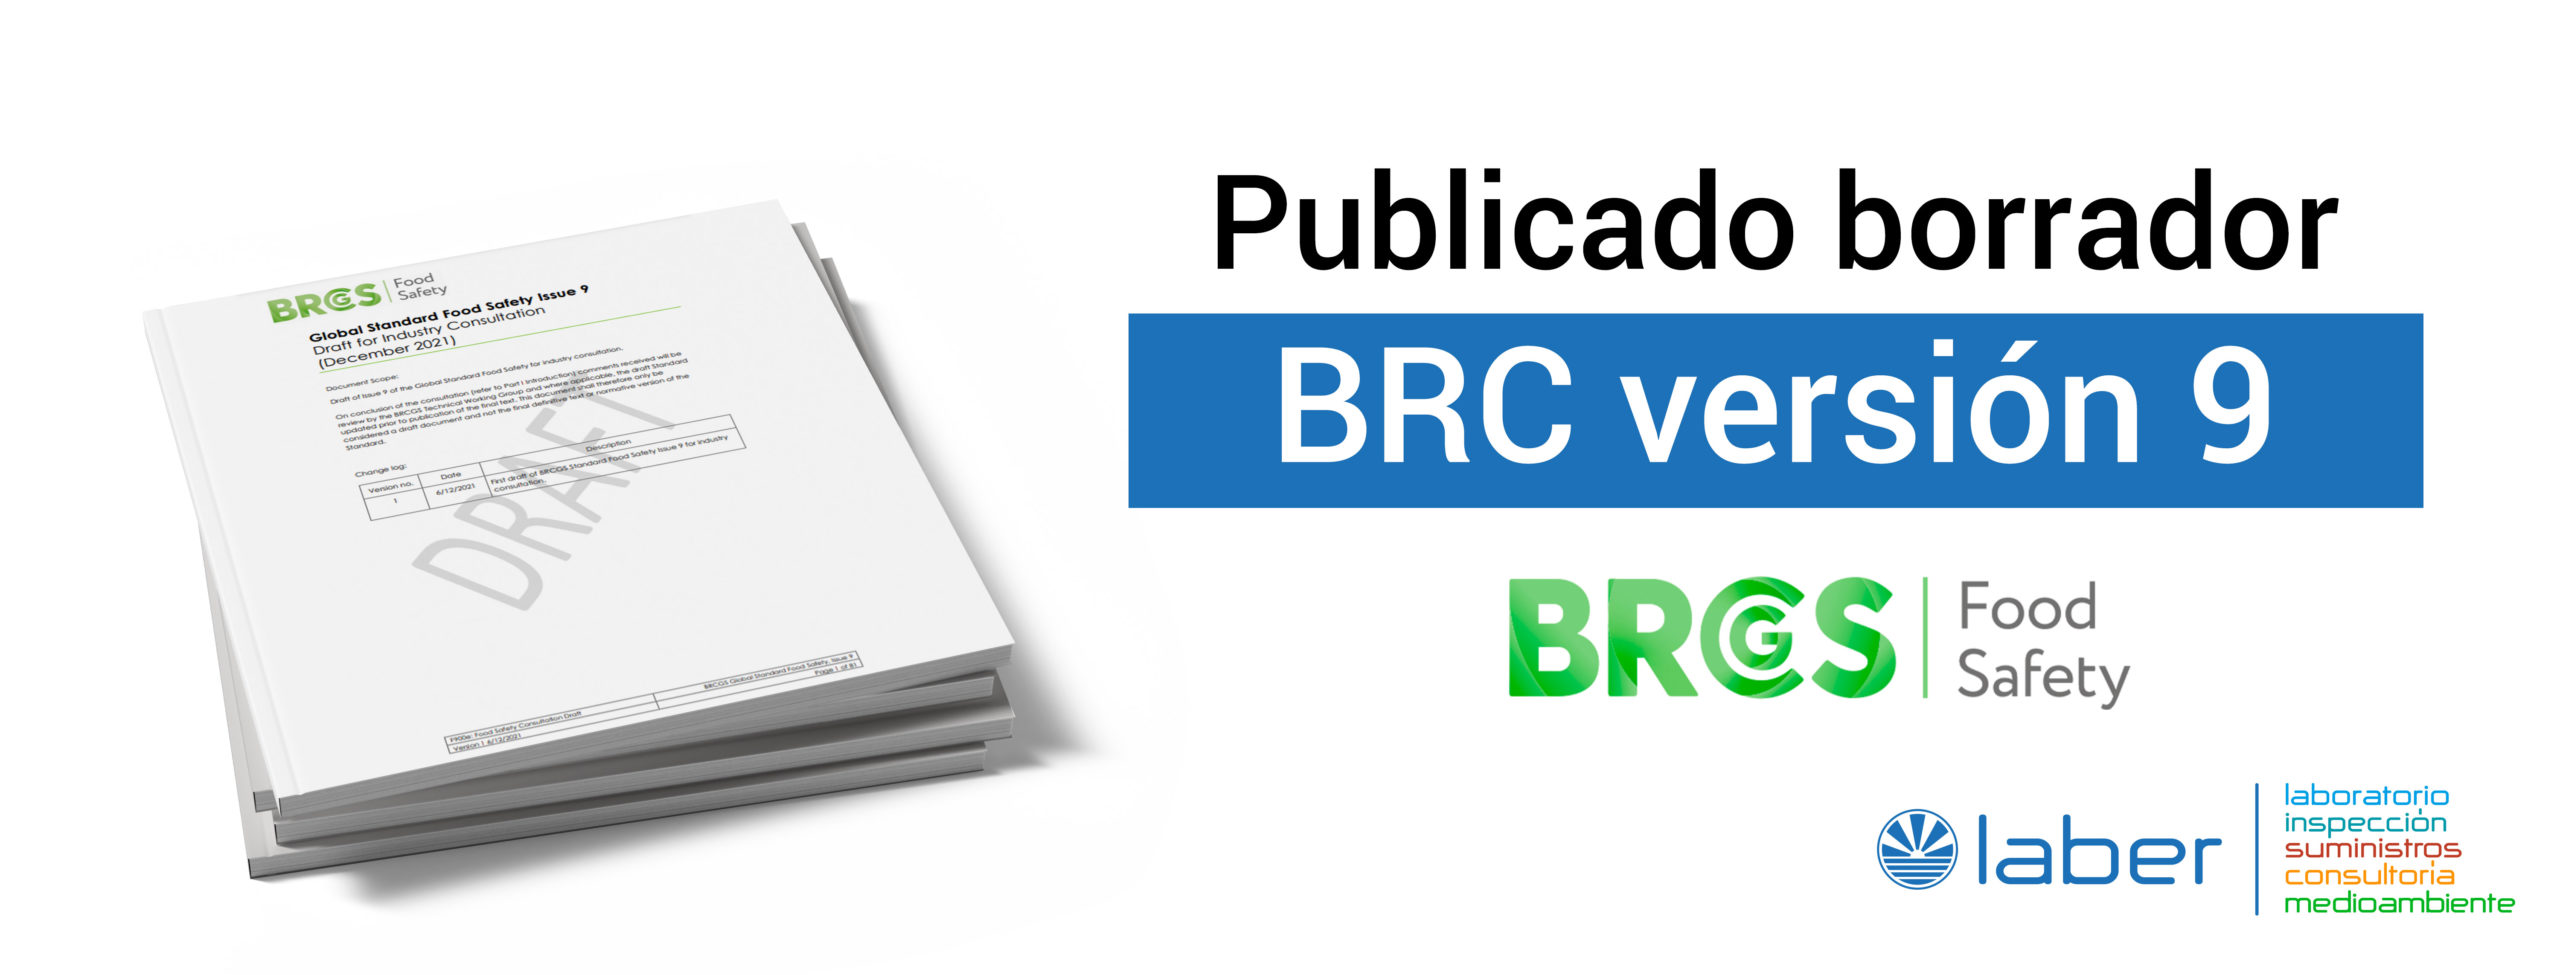 Borrador BRC version 9, estándar norma de seguridad alimentaria BRC v9, BRCGS version 9, consultoría, seguridad alimentaria, Corporación Laber